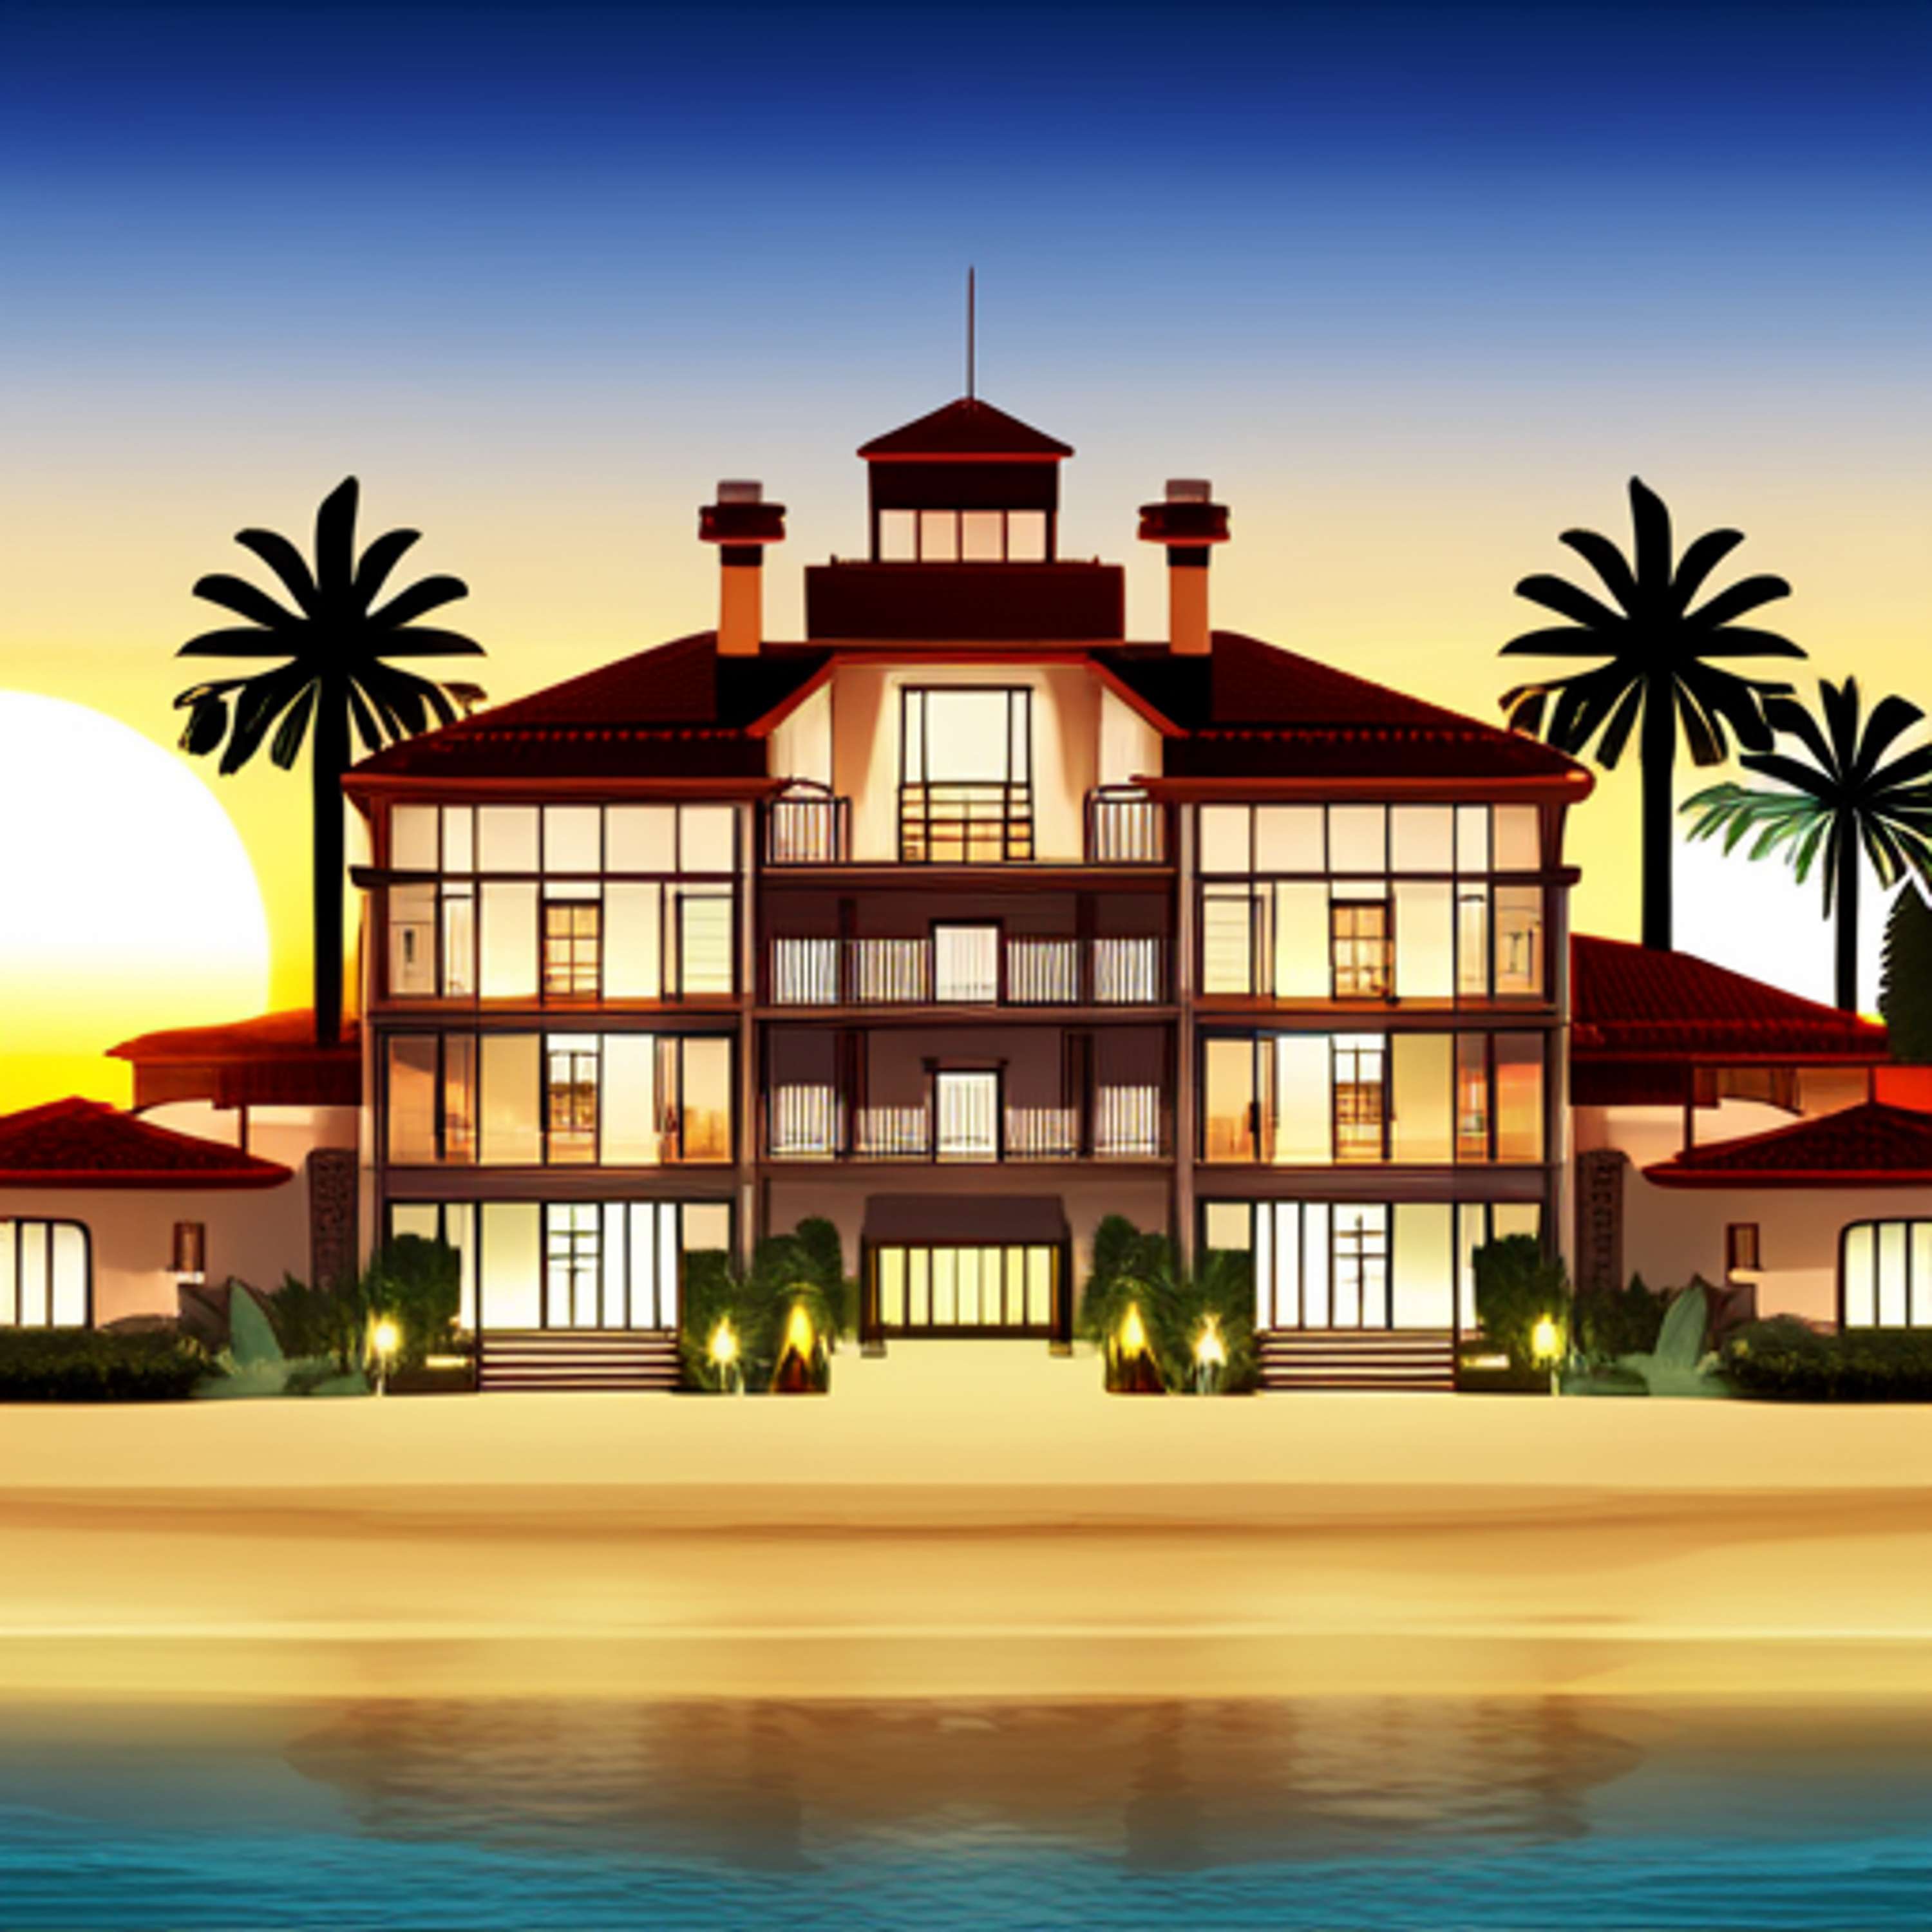 Malibu Luxury Real Estate: A Realtor's Guide